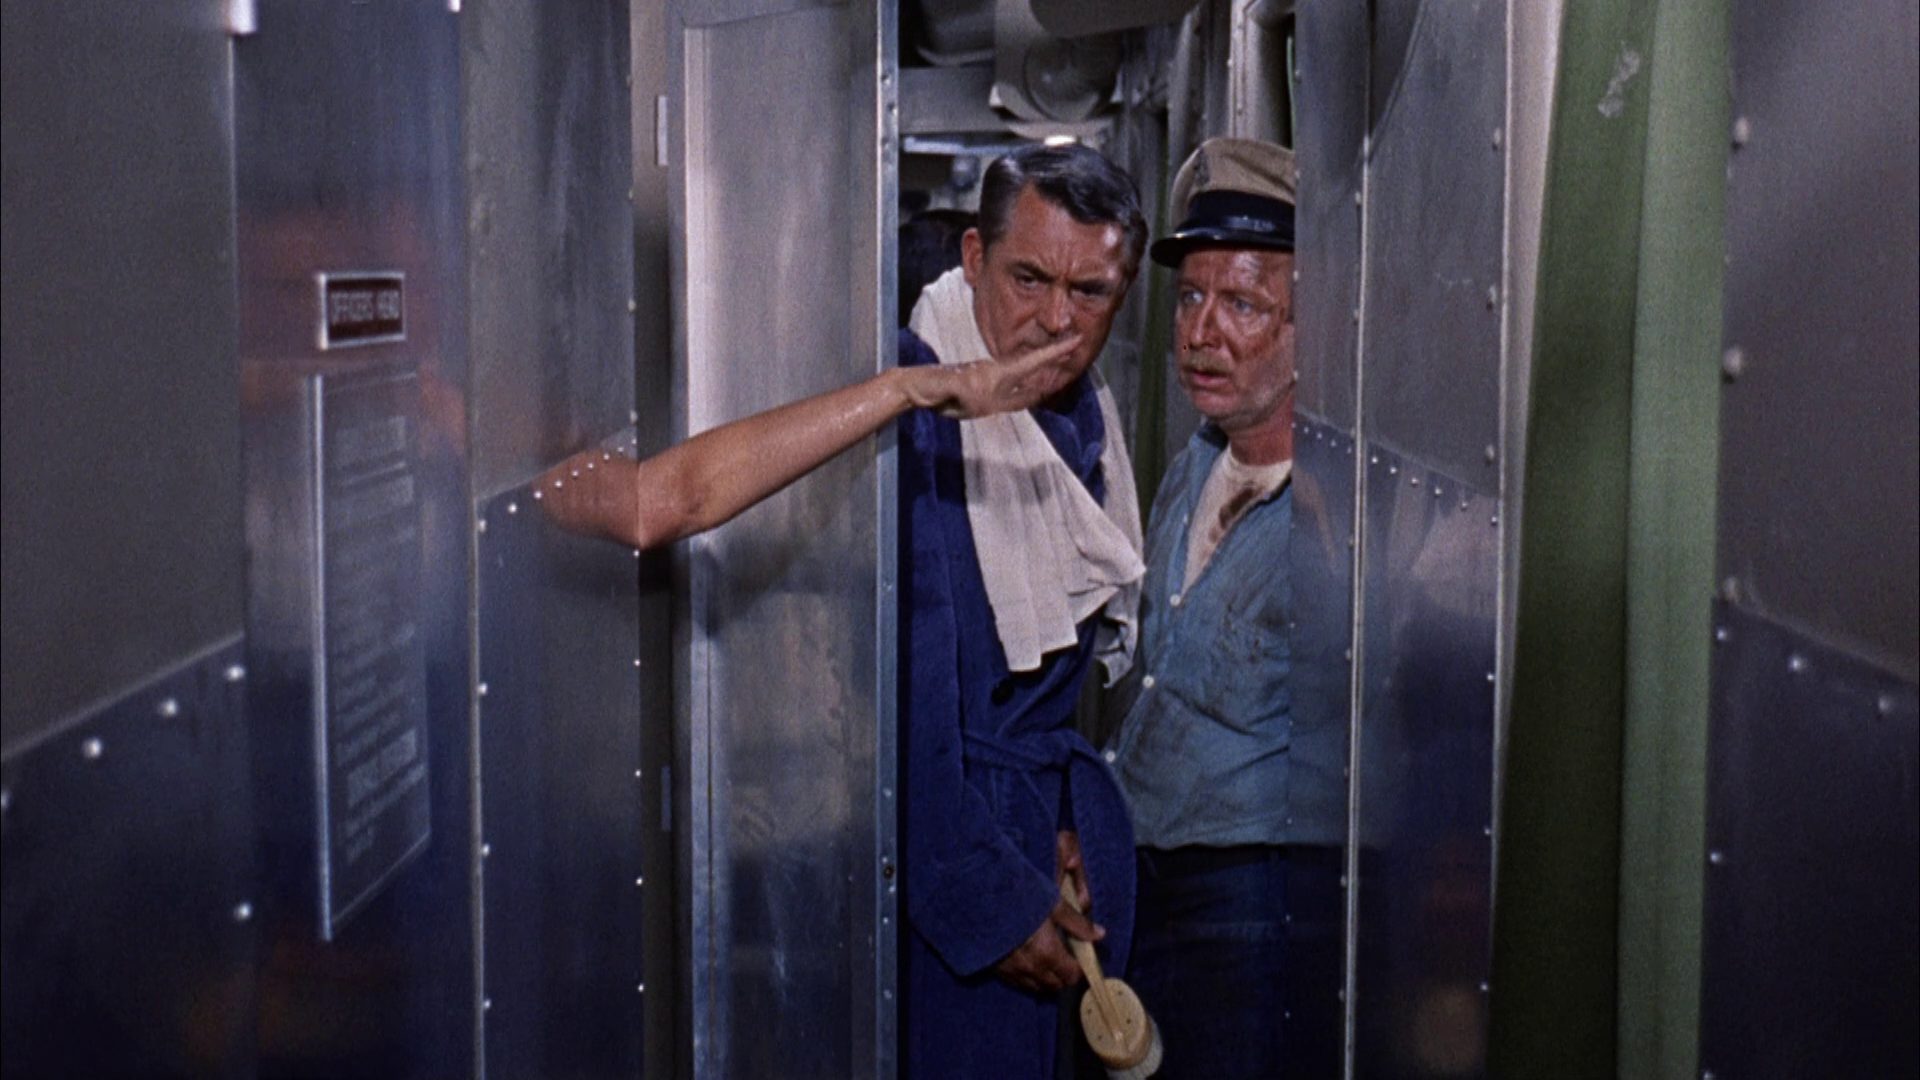 Cray Grant als U-Boot-Kapitän im Bademantel blick im Beisein eines seiner Seeleute verwundert auf die aus der Duschkabine ausgestreckte Hand einer Frau.